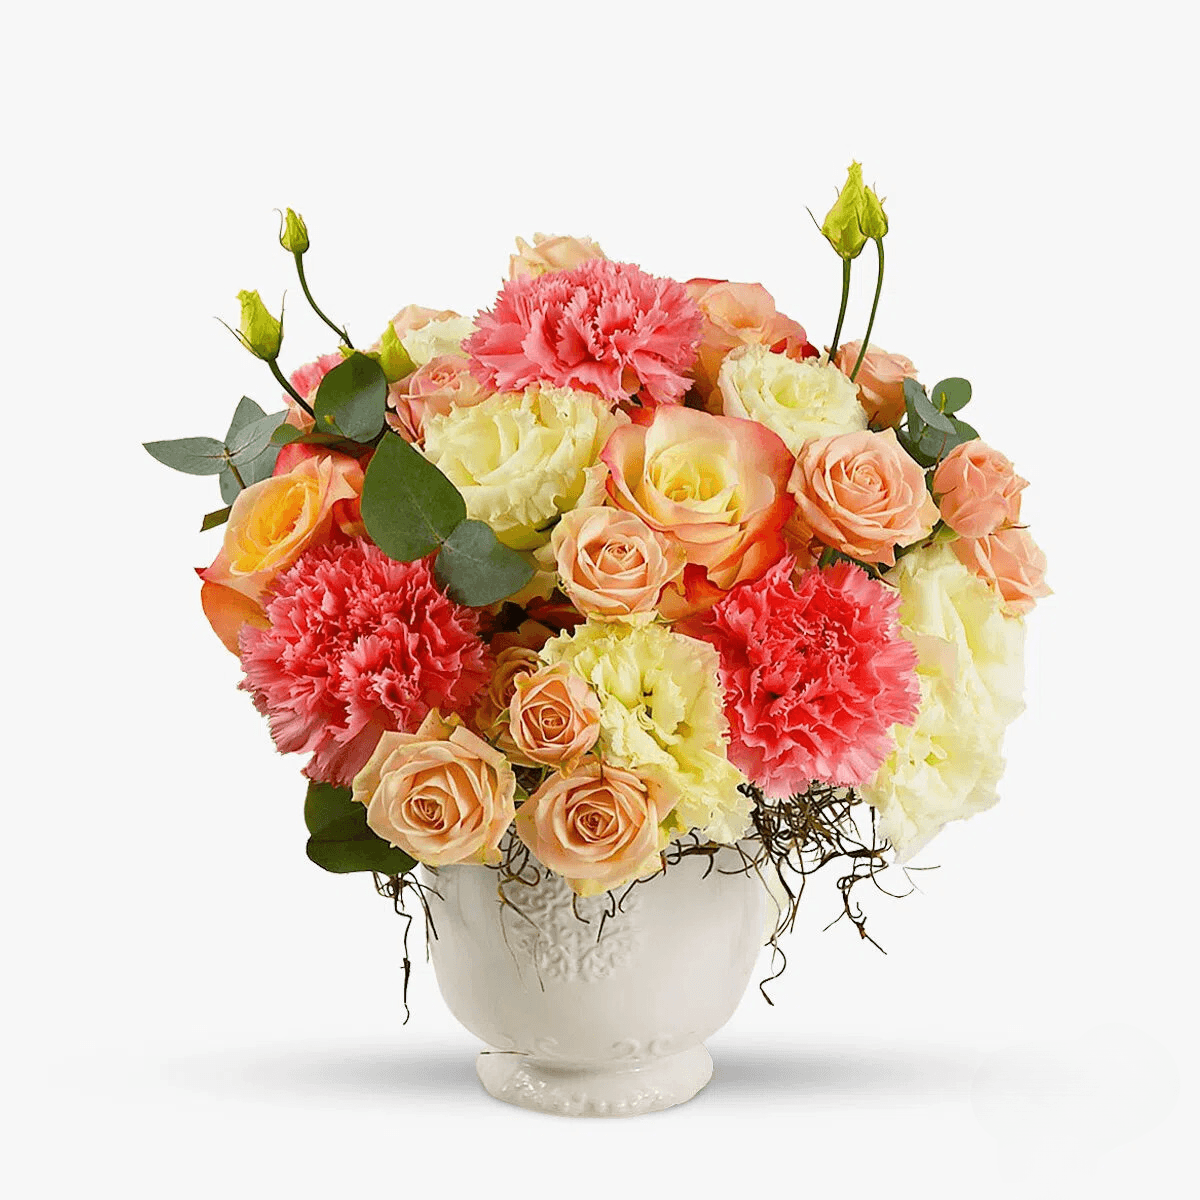 Aranjament floral de toamna – Standard Aranjament